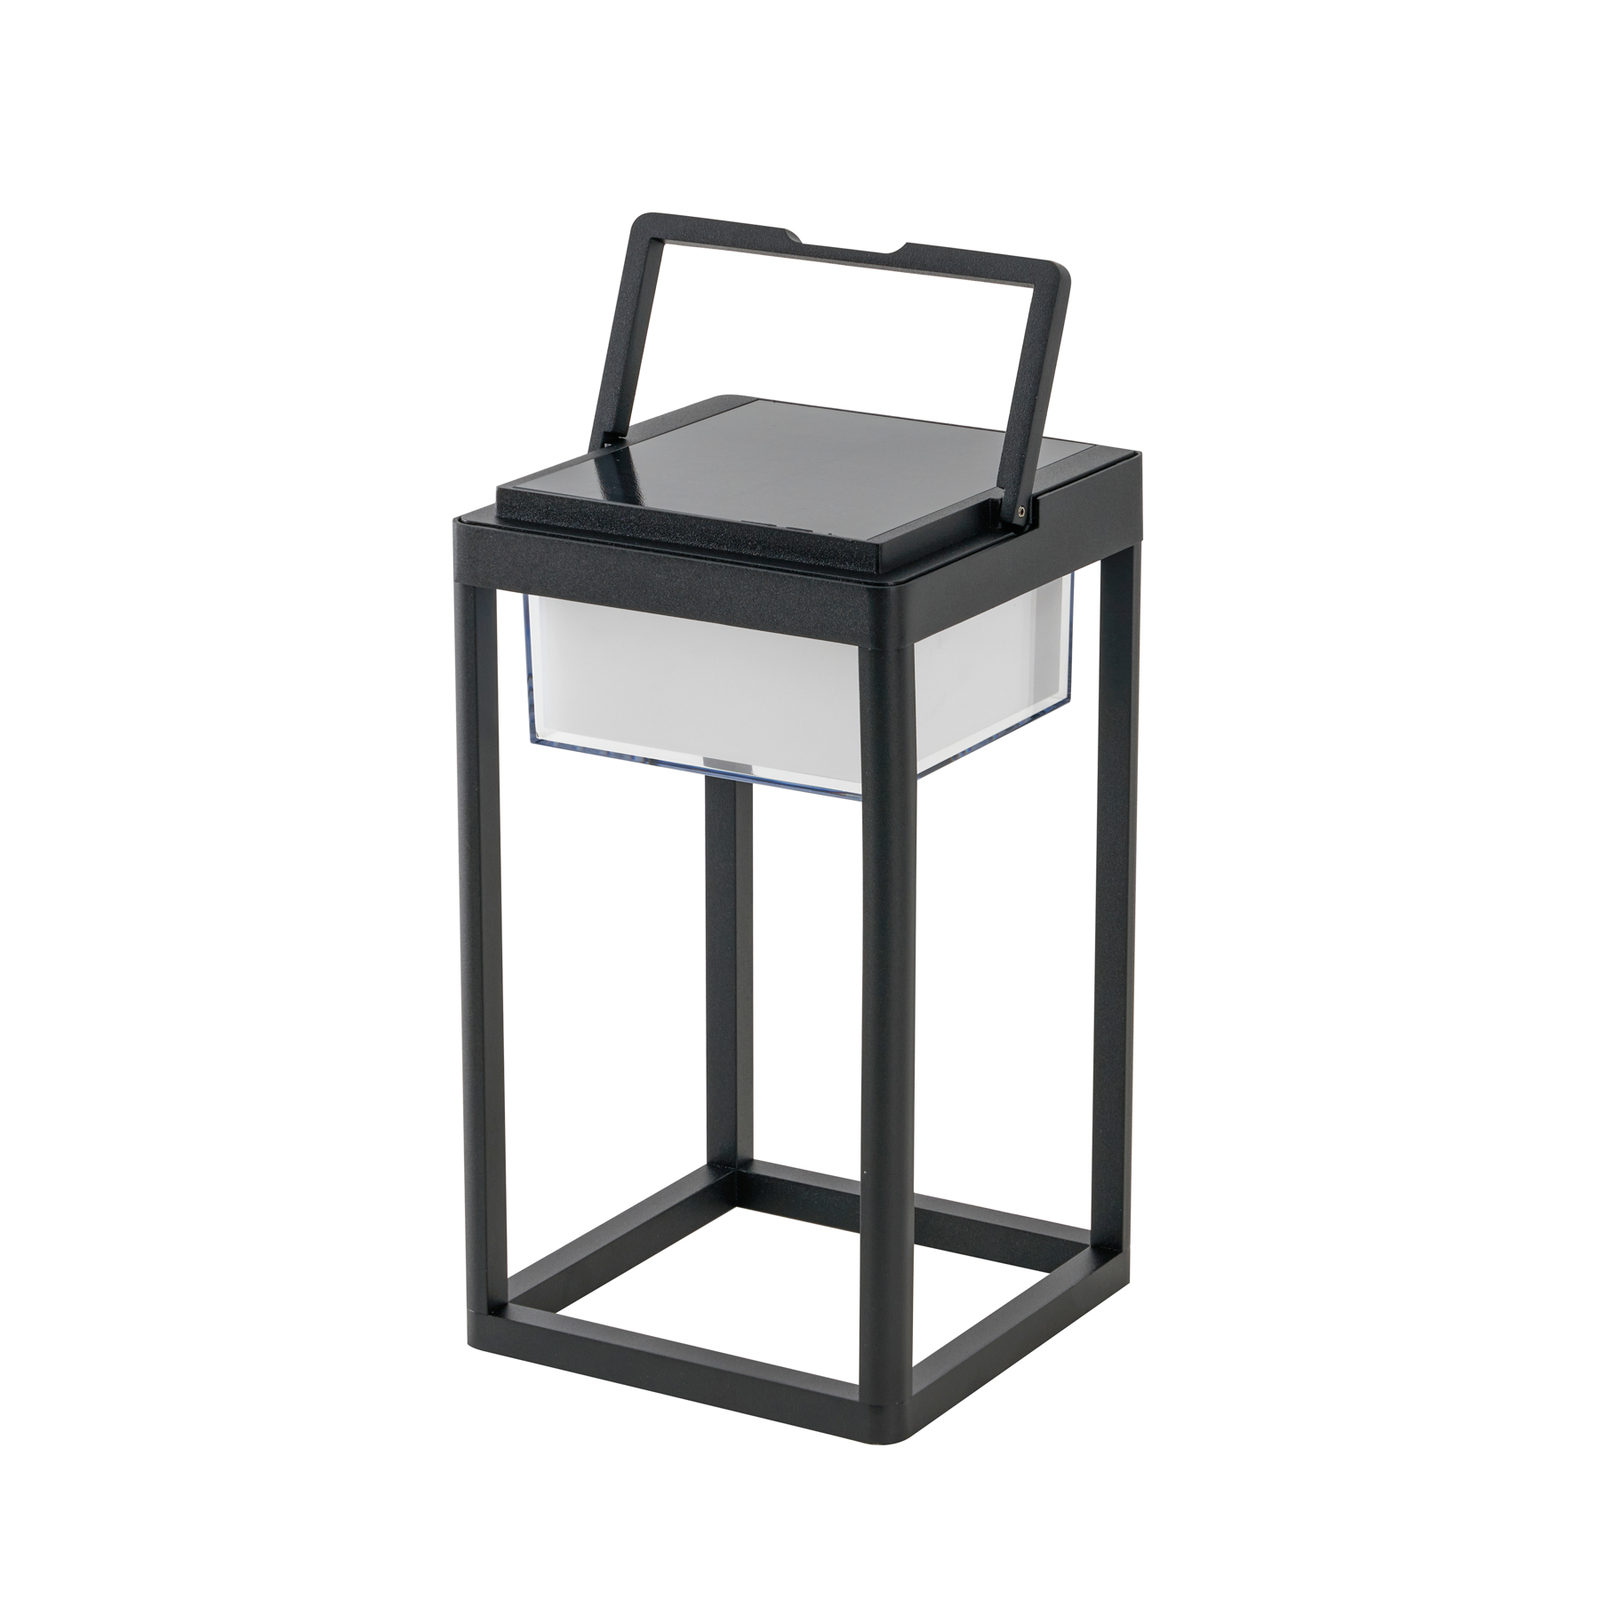 Ηλιακό επιτραπέζιο φωτιστικό LED Lucande Tilena, γωνιακό, μαύρο, με